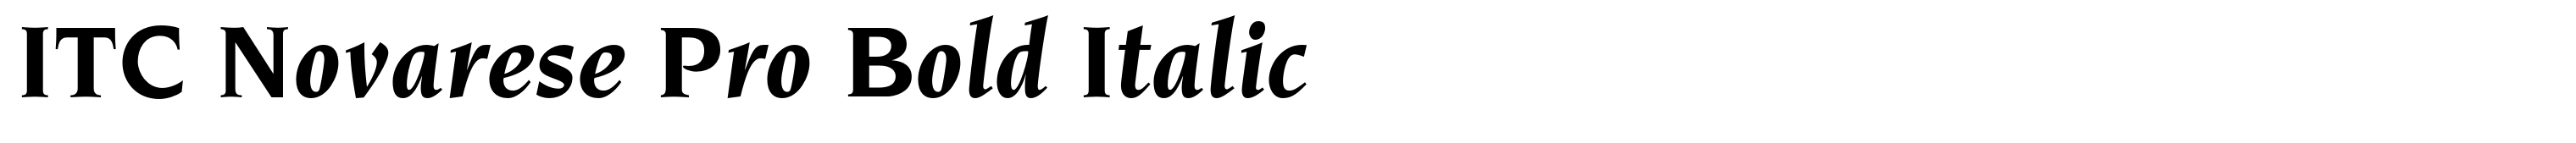 ITC Novarese Pro Bold Italic